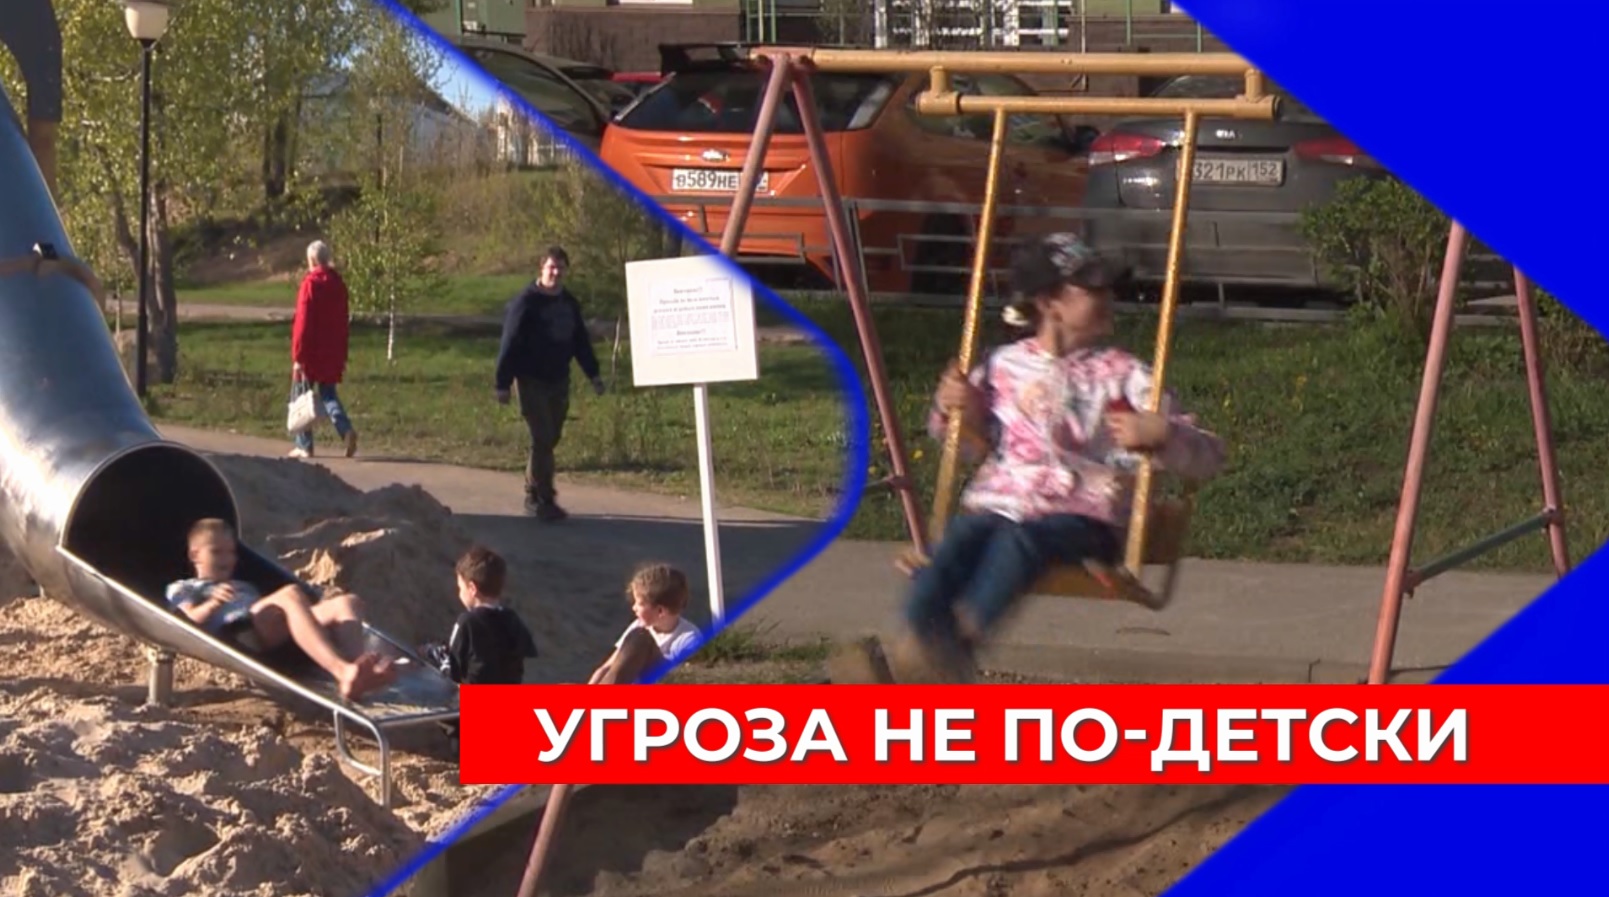 Эксперты Народного фронта выявили опасные детские площадки в Нижнем Новгороде